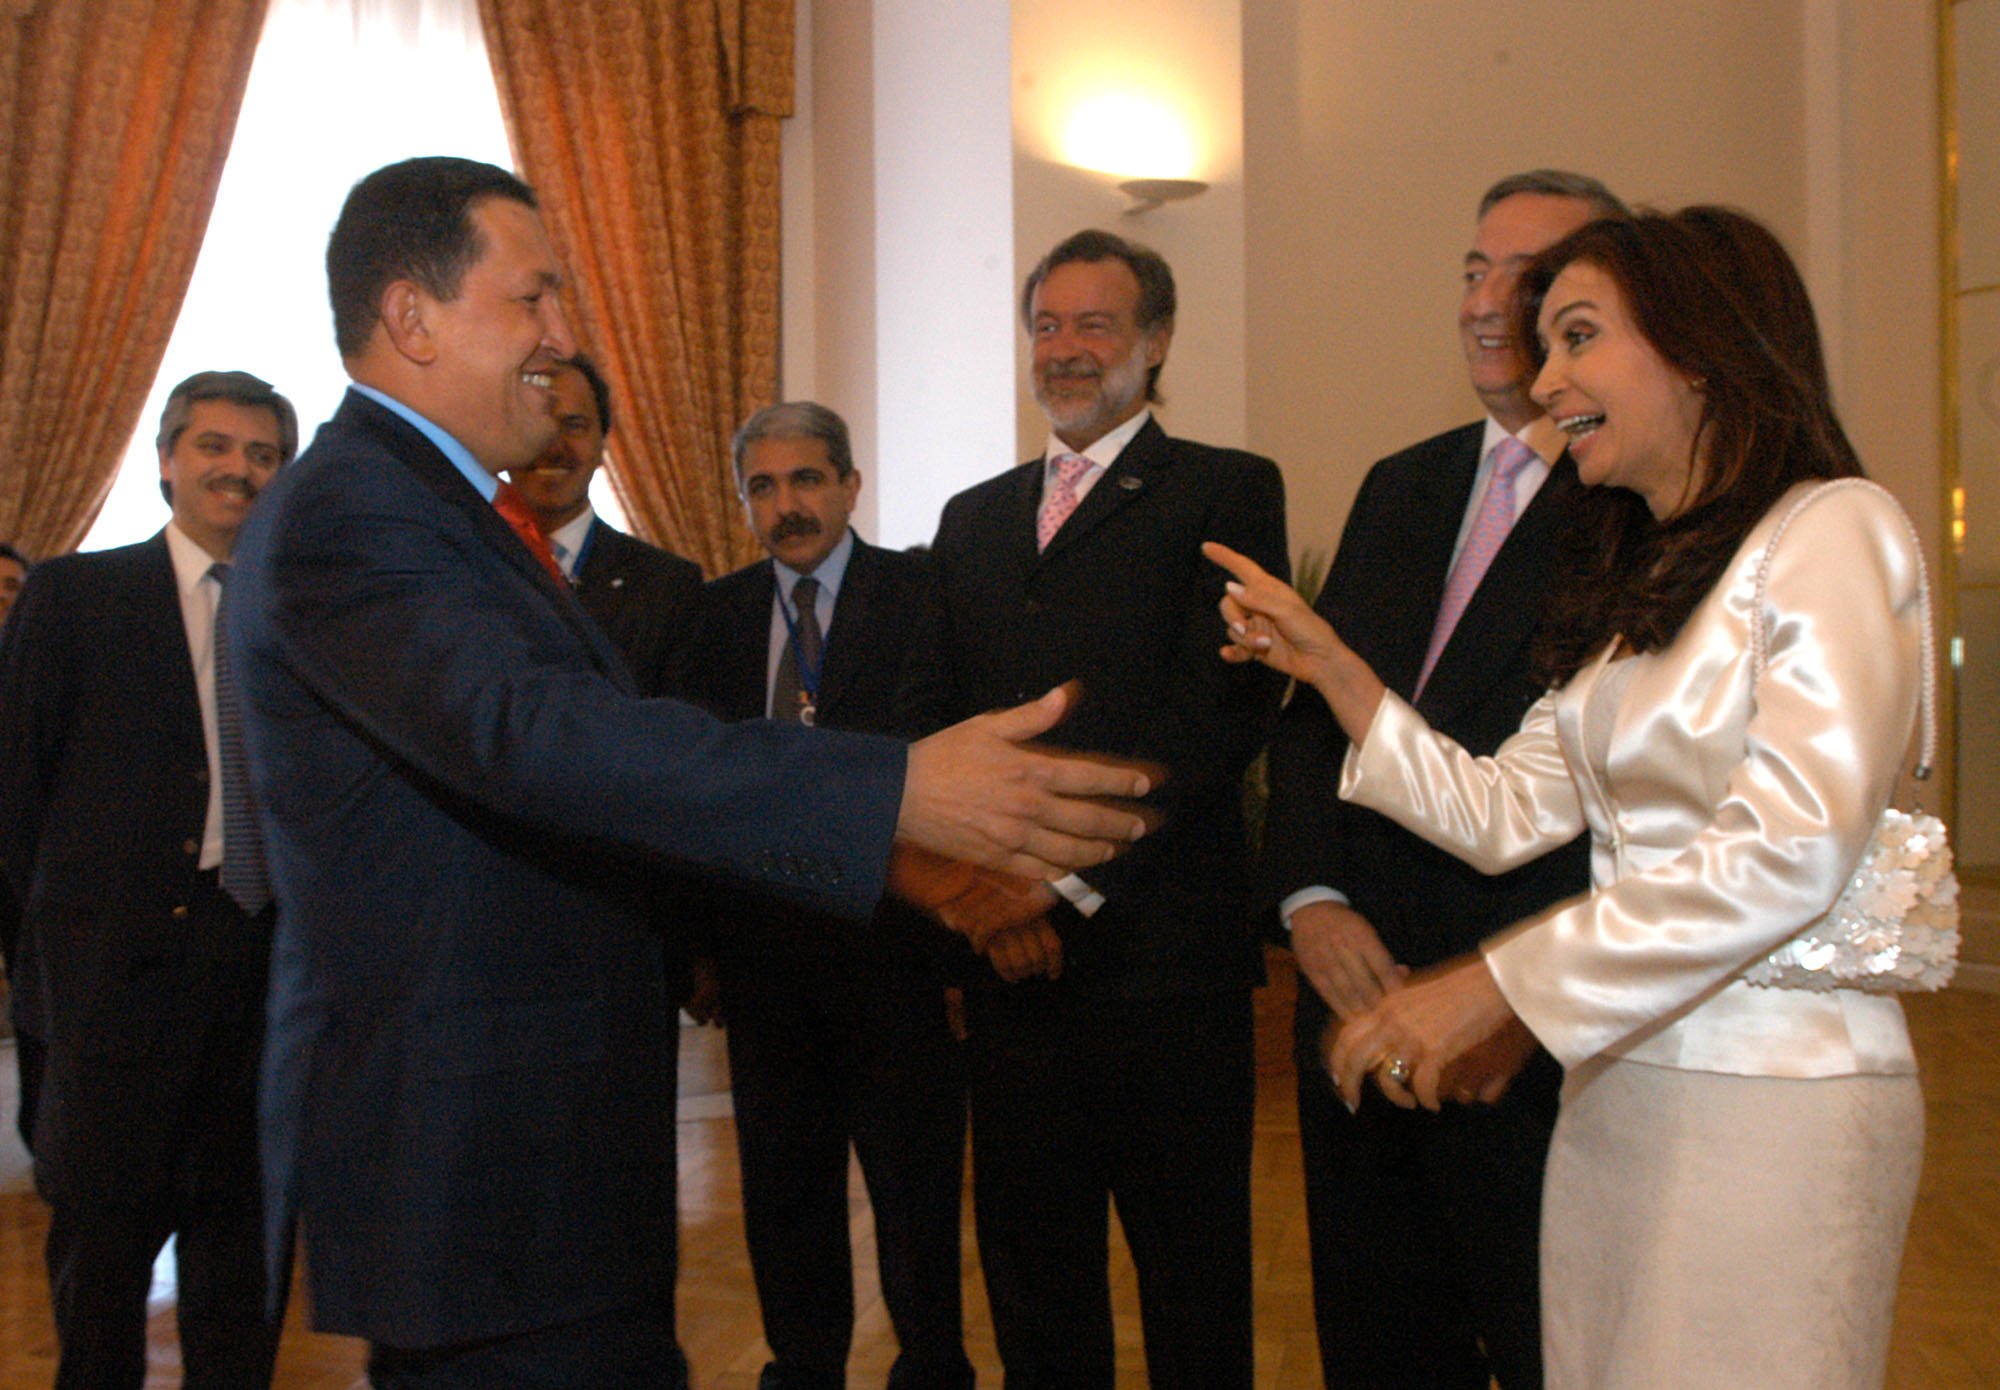  El Presidente Nestor Kirchner y la primera Dama, Cristina Fernandez, saludan al Presidente de Venezuela, Hugo Chavez